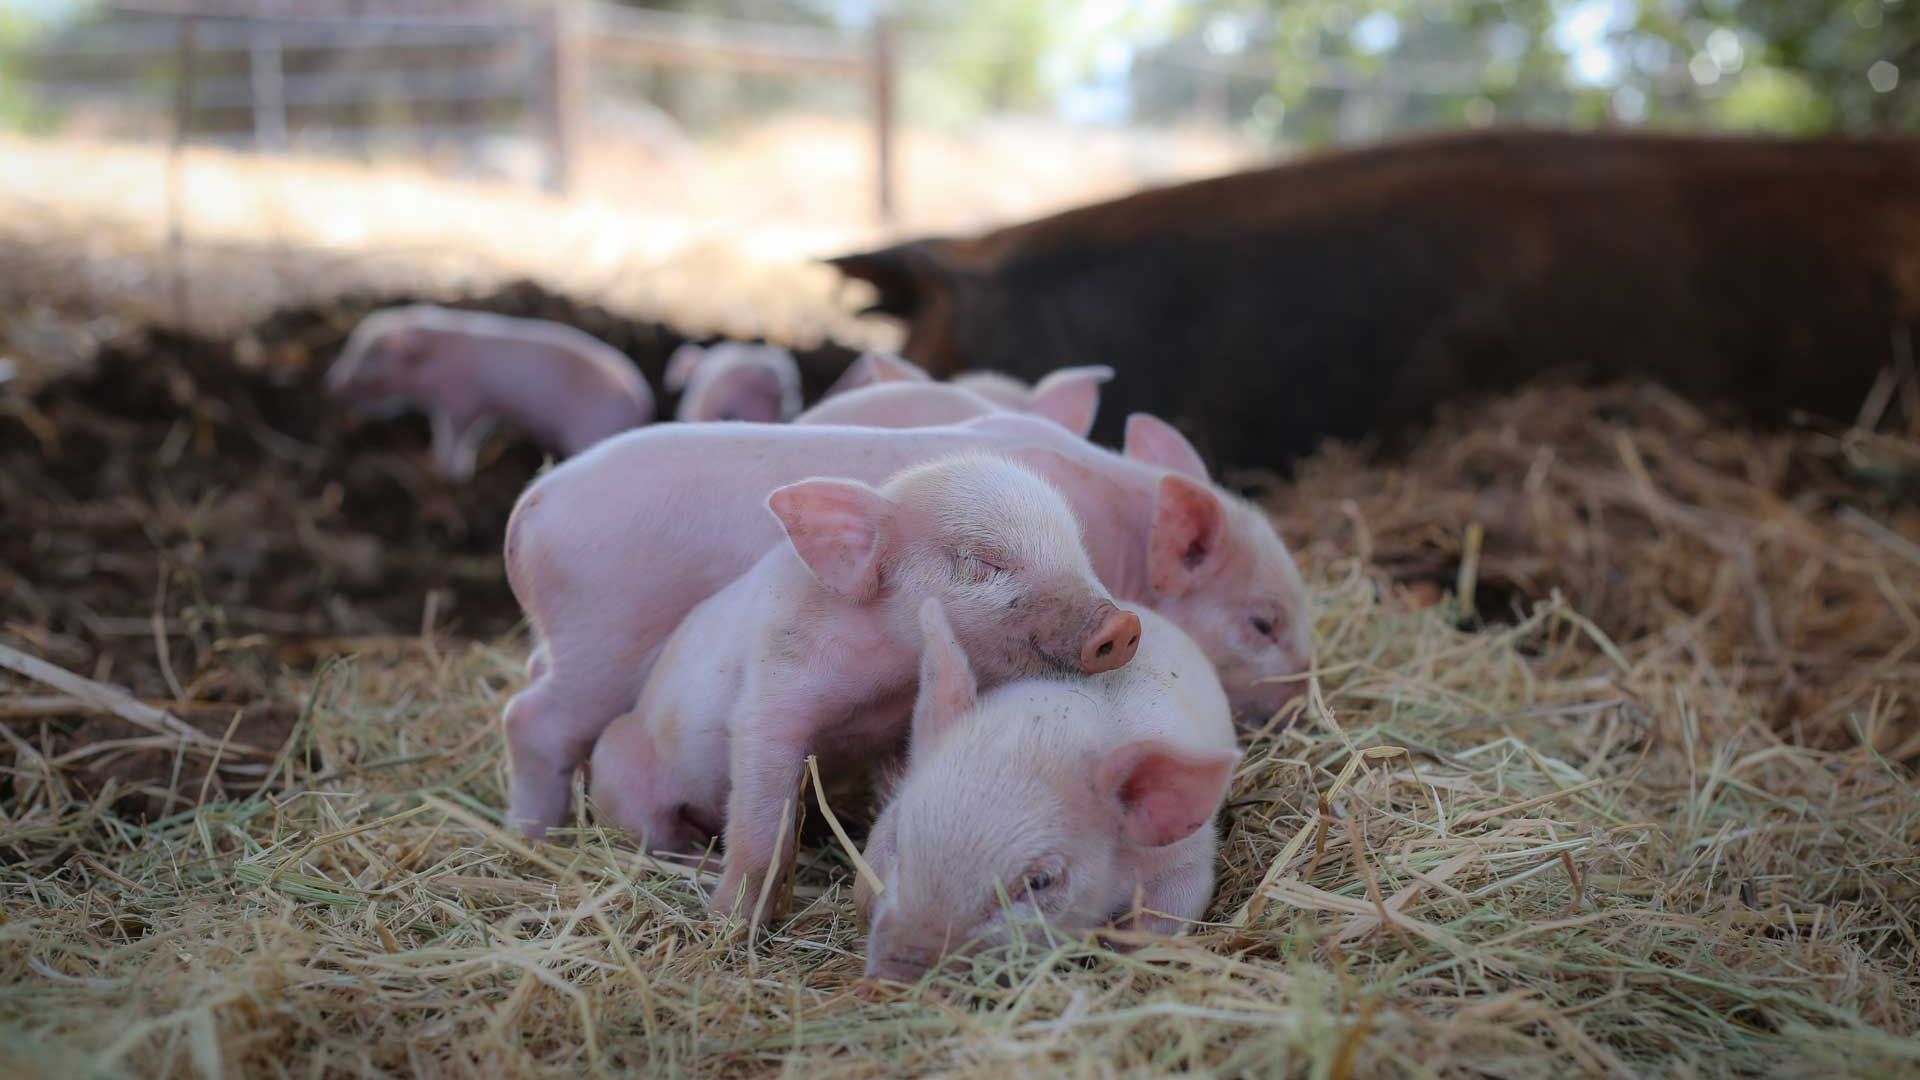 Mehrere Ferkel liegen zusammengerueckt im Stroh auf einer Vegan Farm in Nordkalifornien